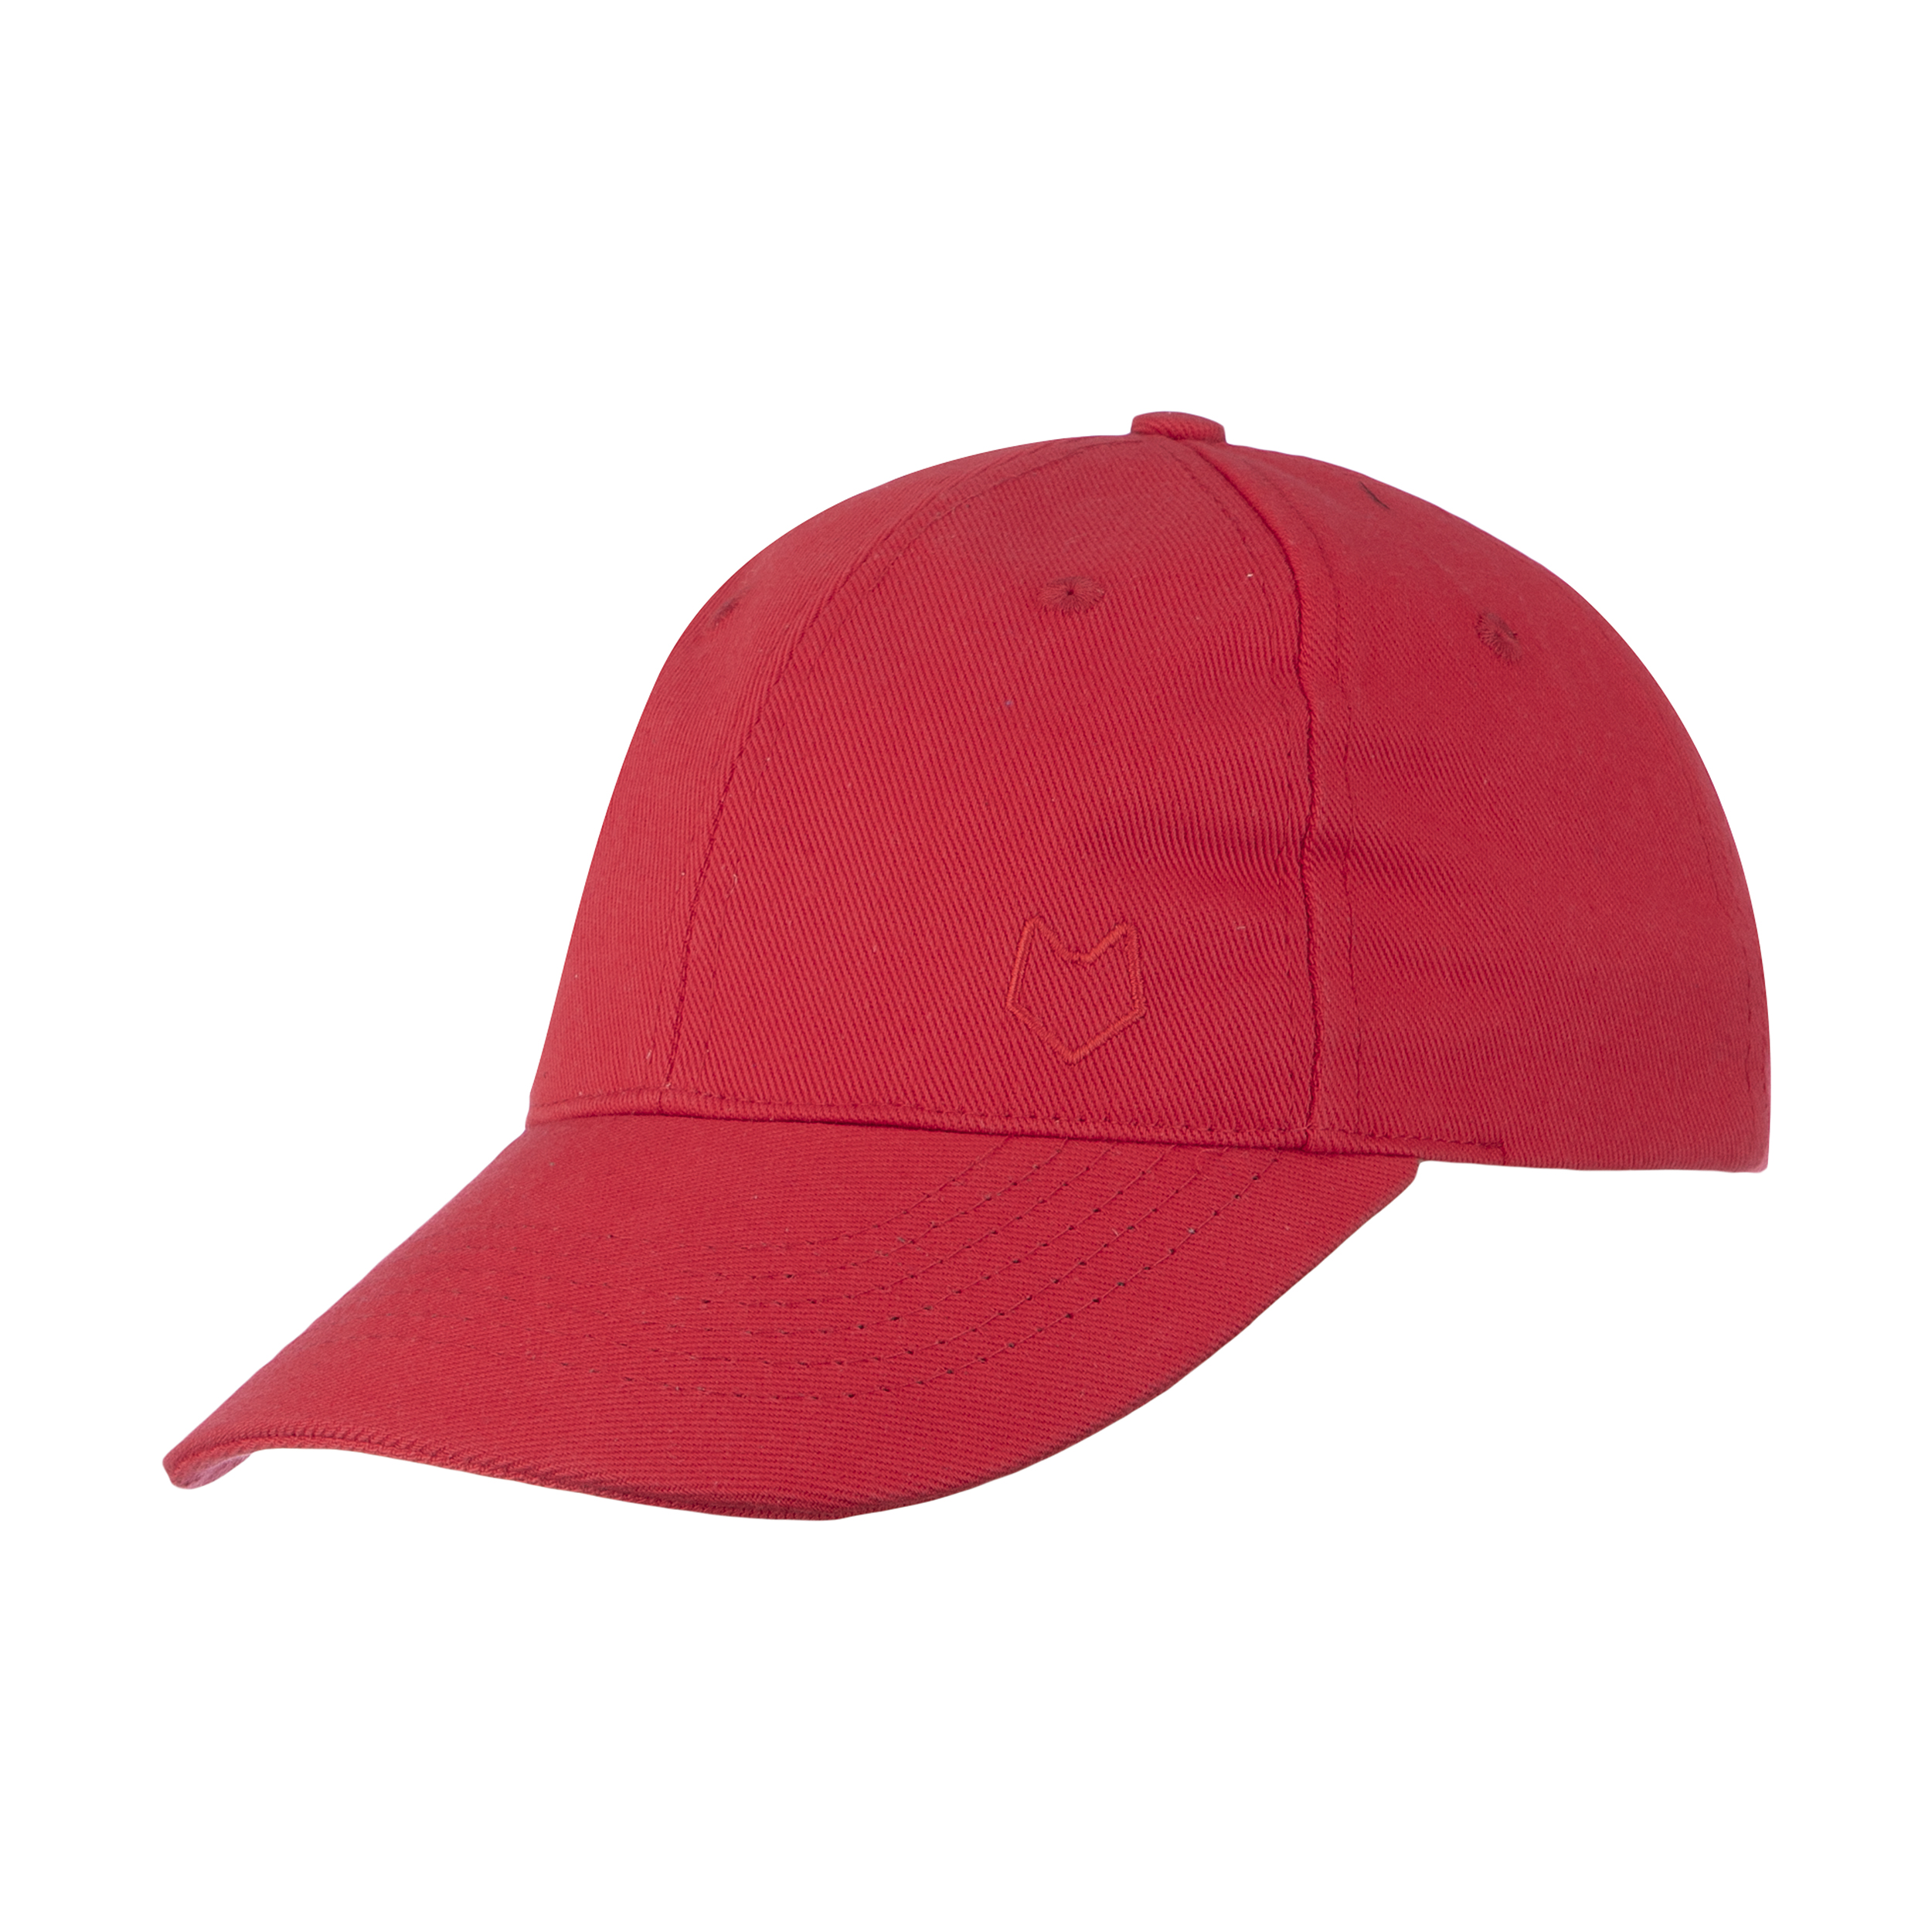 نکته خرید - قیمت روز کلاه کپ مل اند موژ مدل U07706-003 خرید